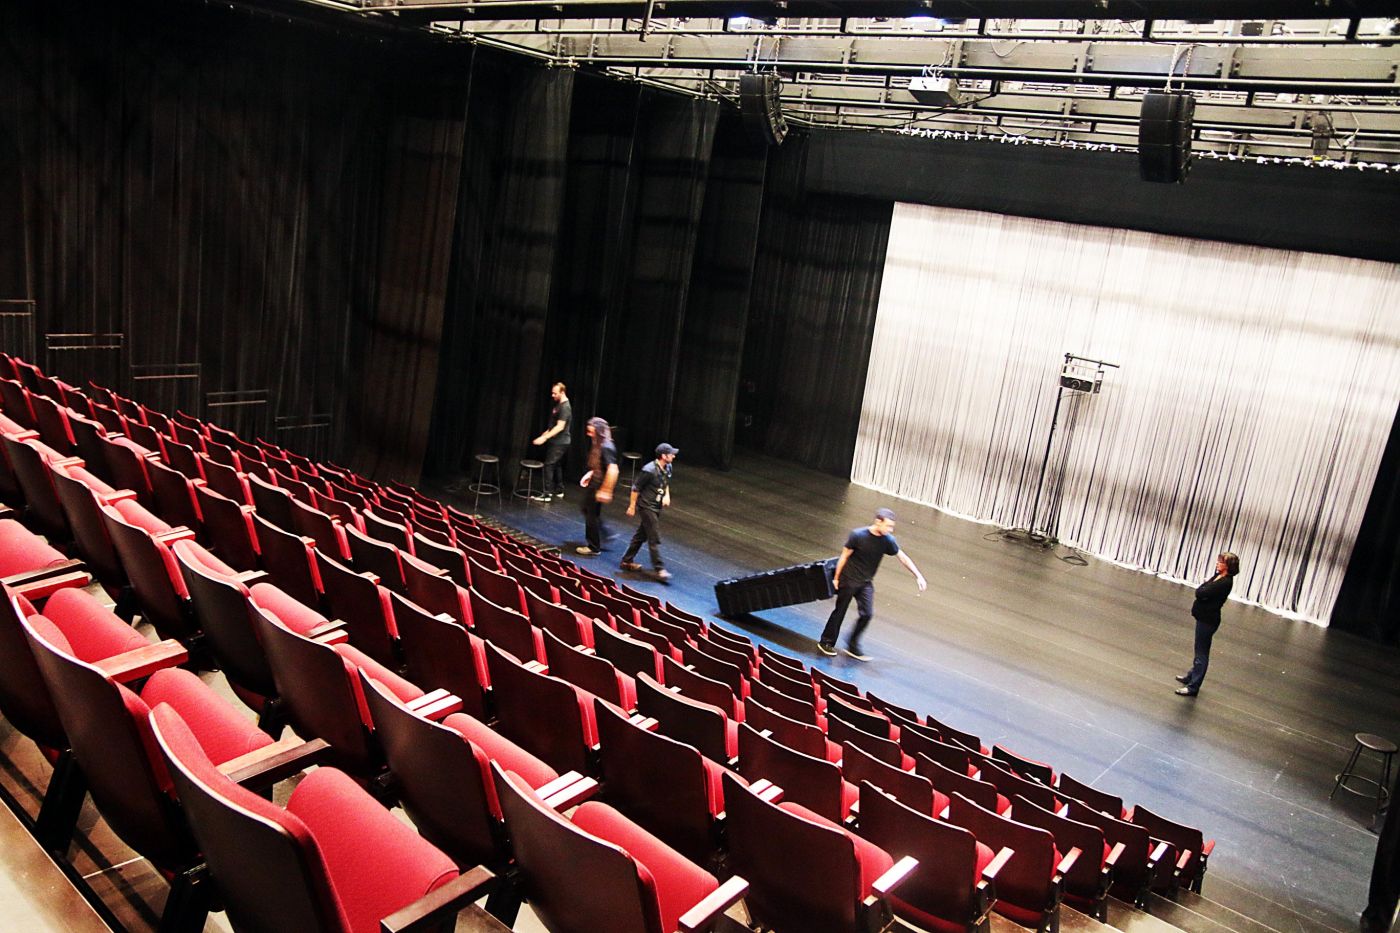 Photographie en couleur, prise de biais. Une salle de théâtre vue d’en haut, à partir des rangées de sièges rouge vif disposées en gradins. Cinq techniciens vêtus en noir travaillent sur la scène.